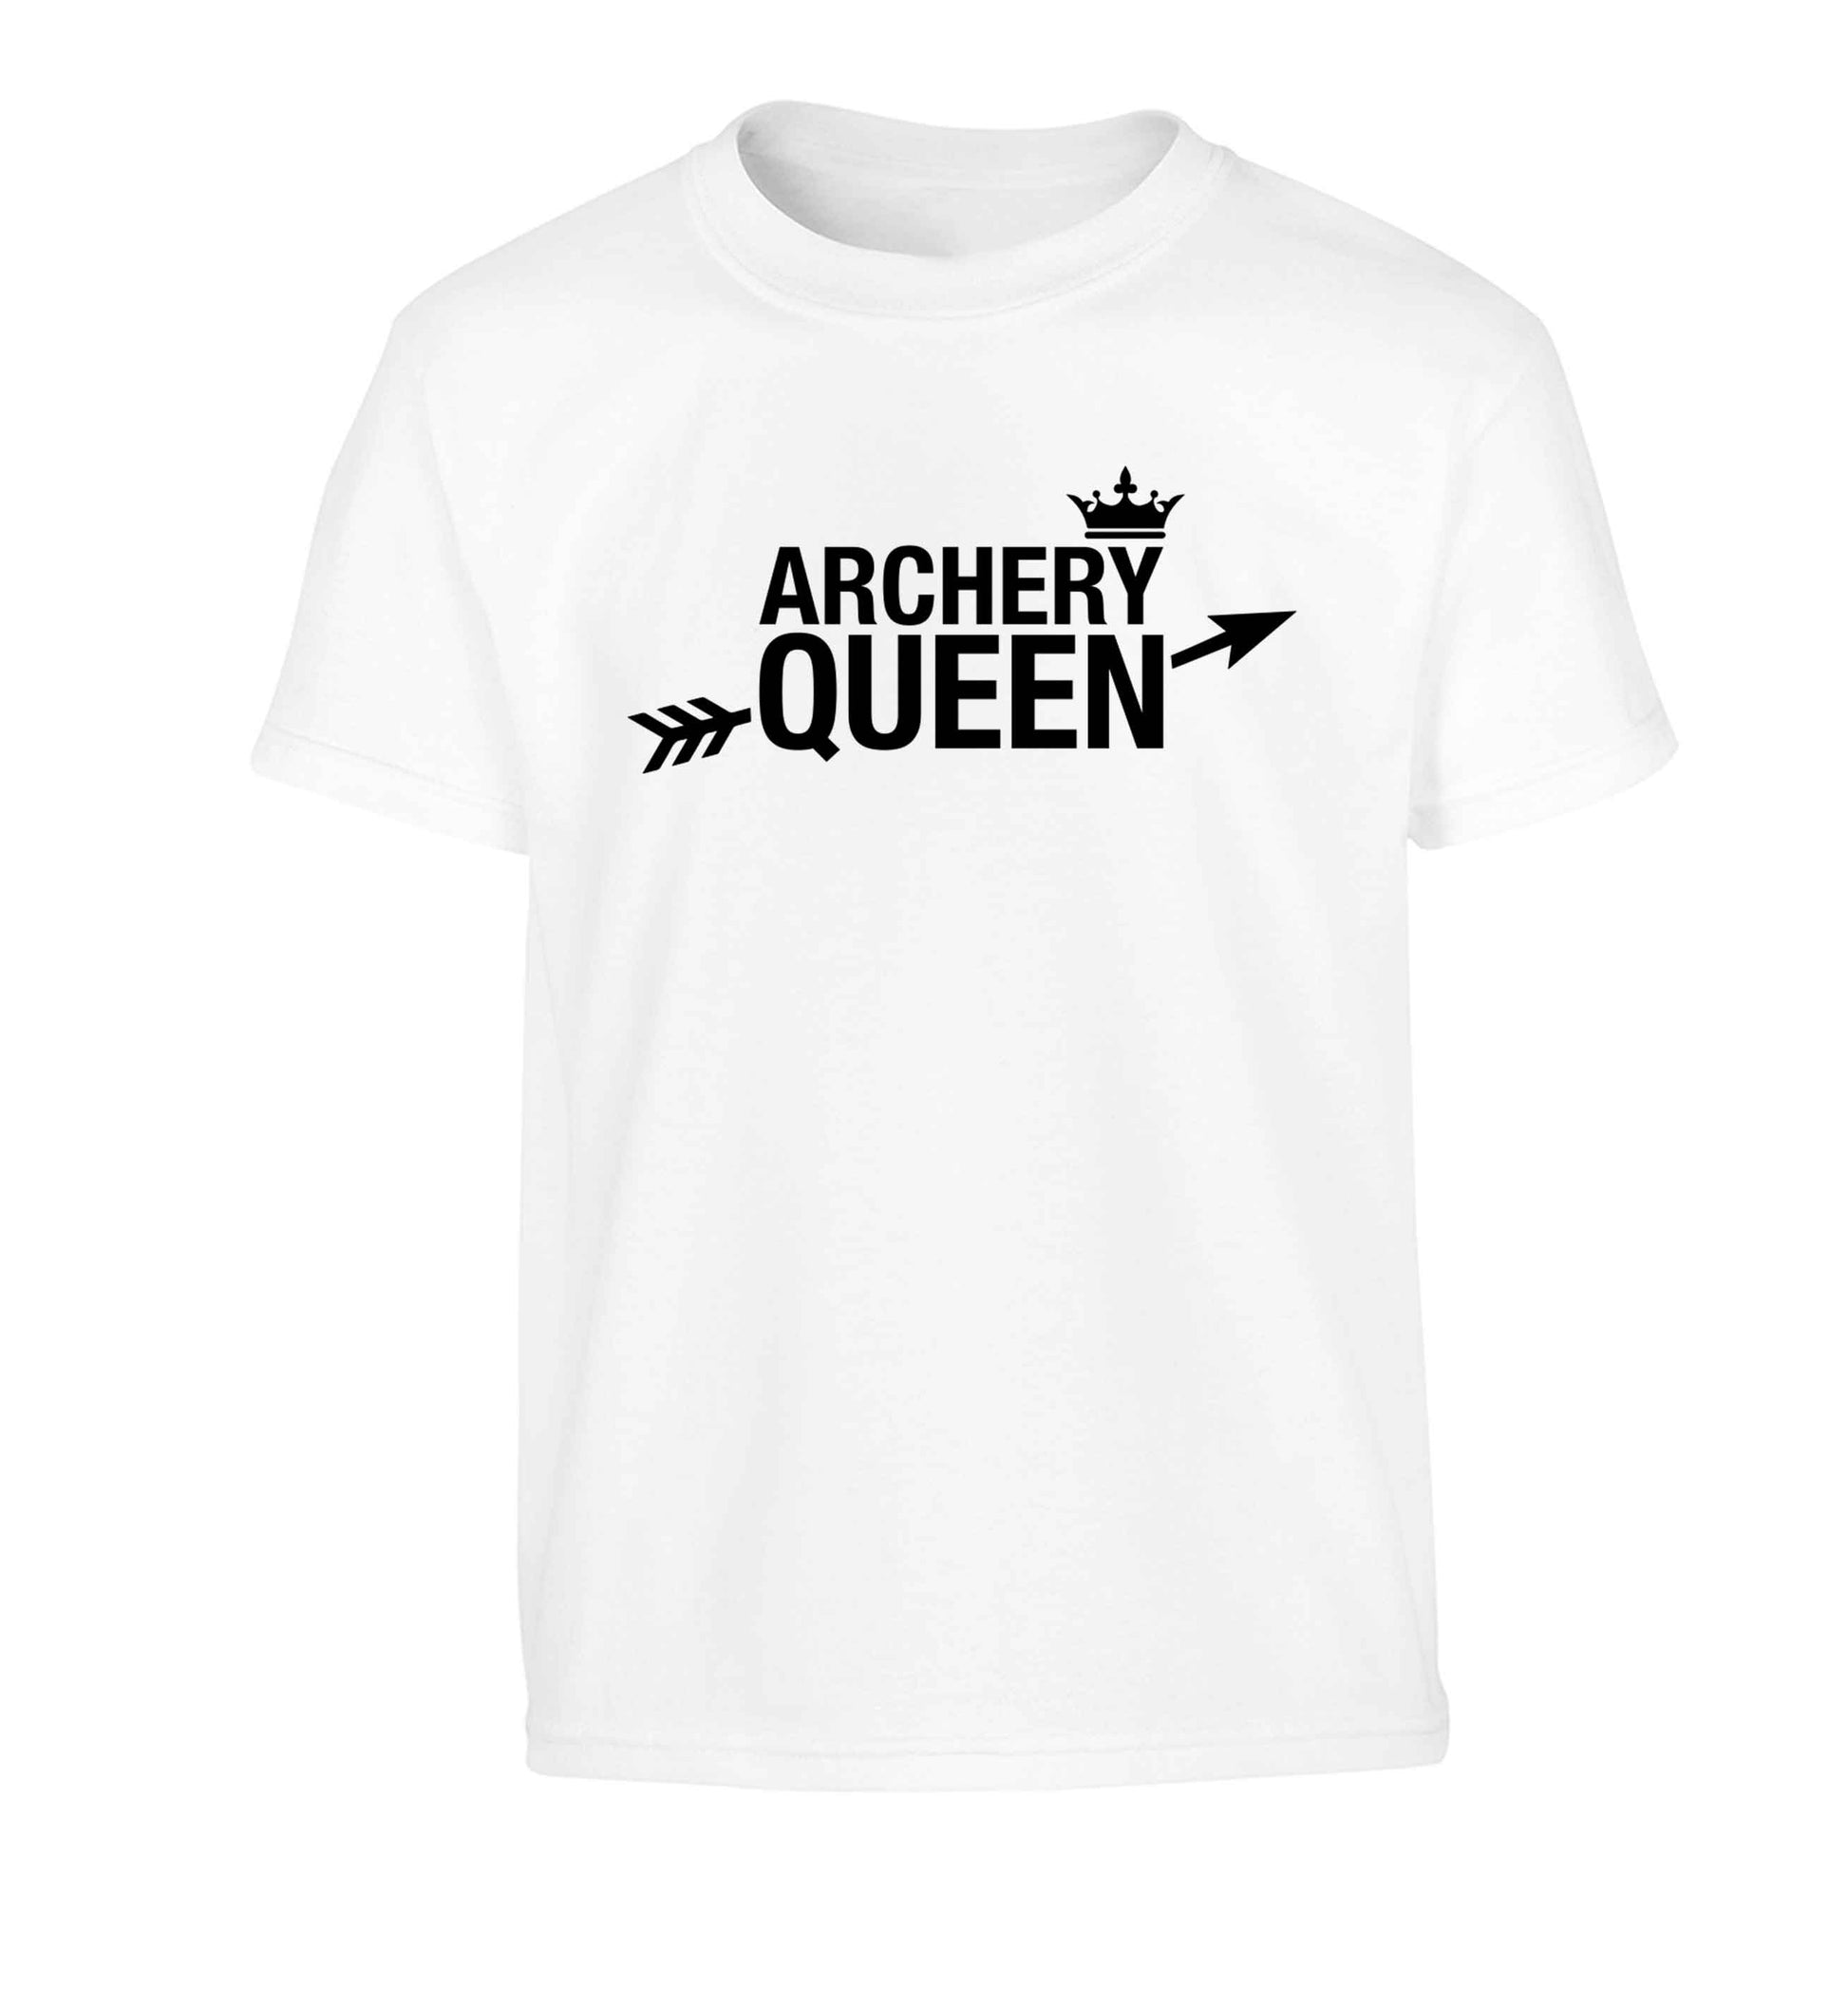 Archery queen Children's white Tshirt 12-13 Years